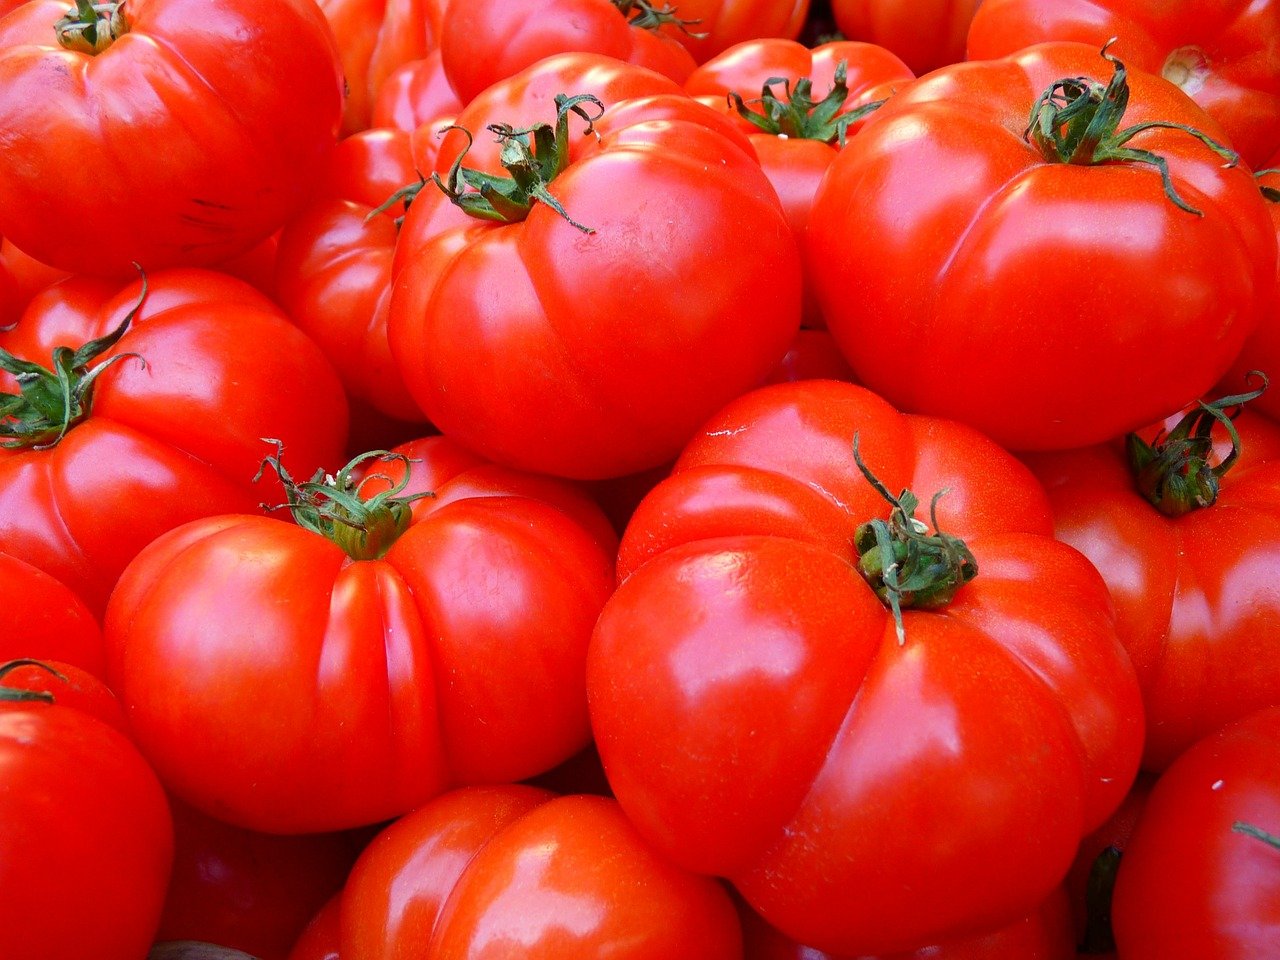 Na imagem, estão vários tomates vermelhos amontoados.